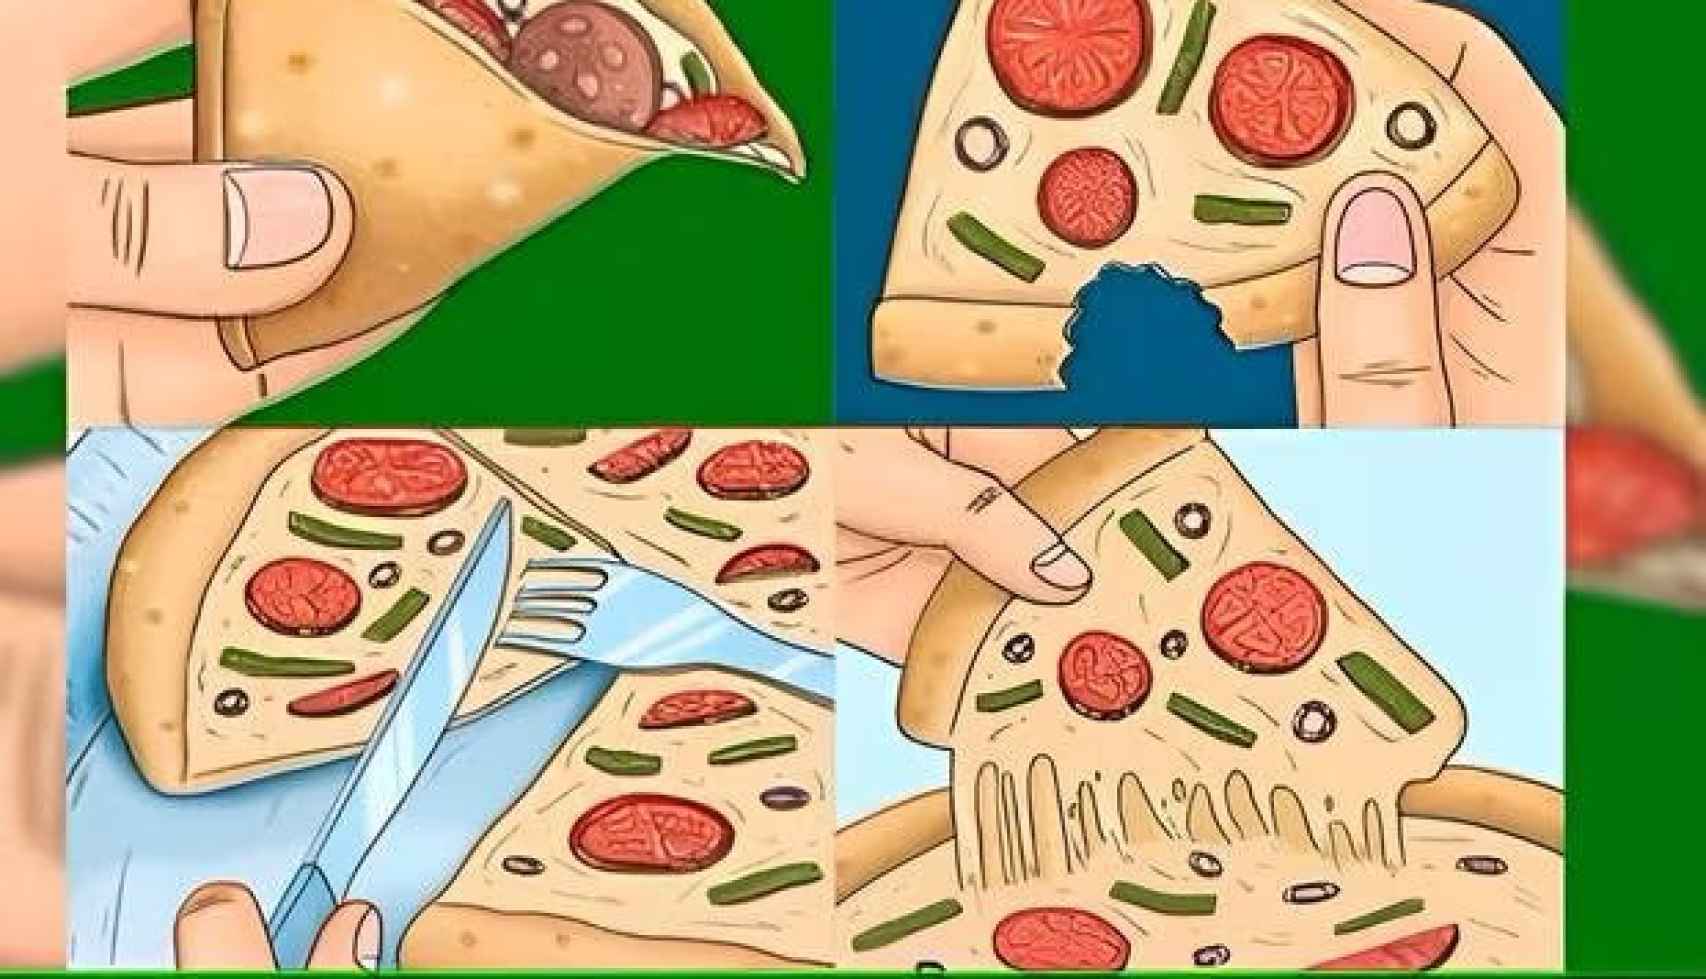 Según la forma en que comes la pizza revelará tu edad mental.